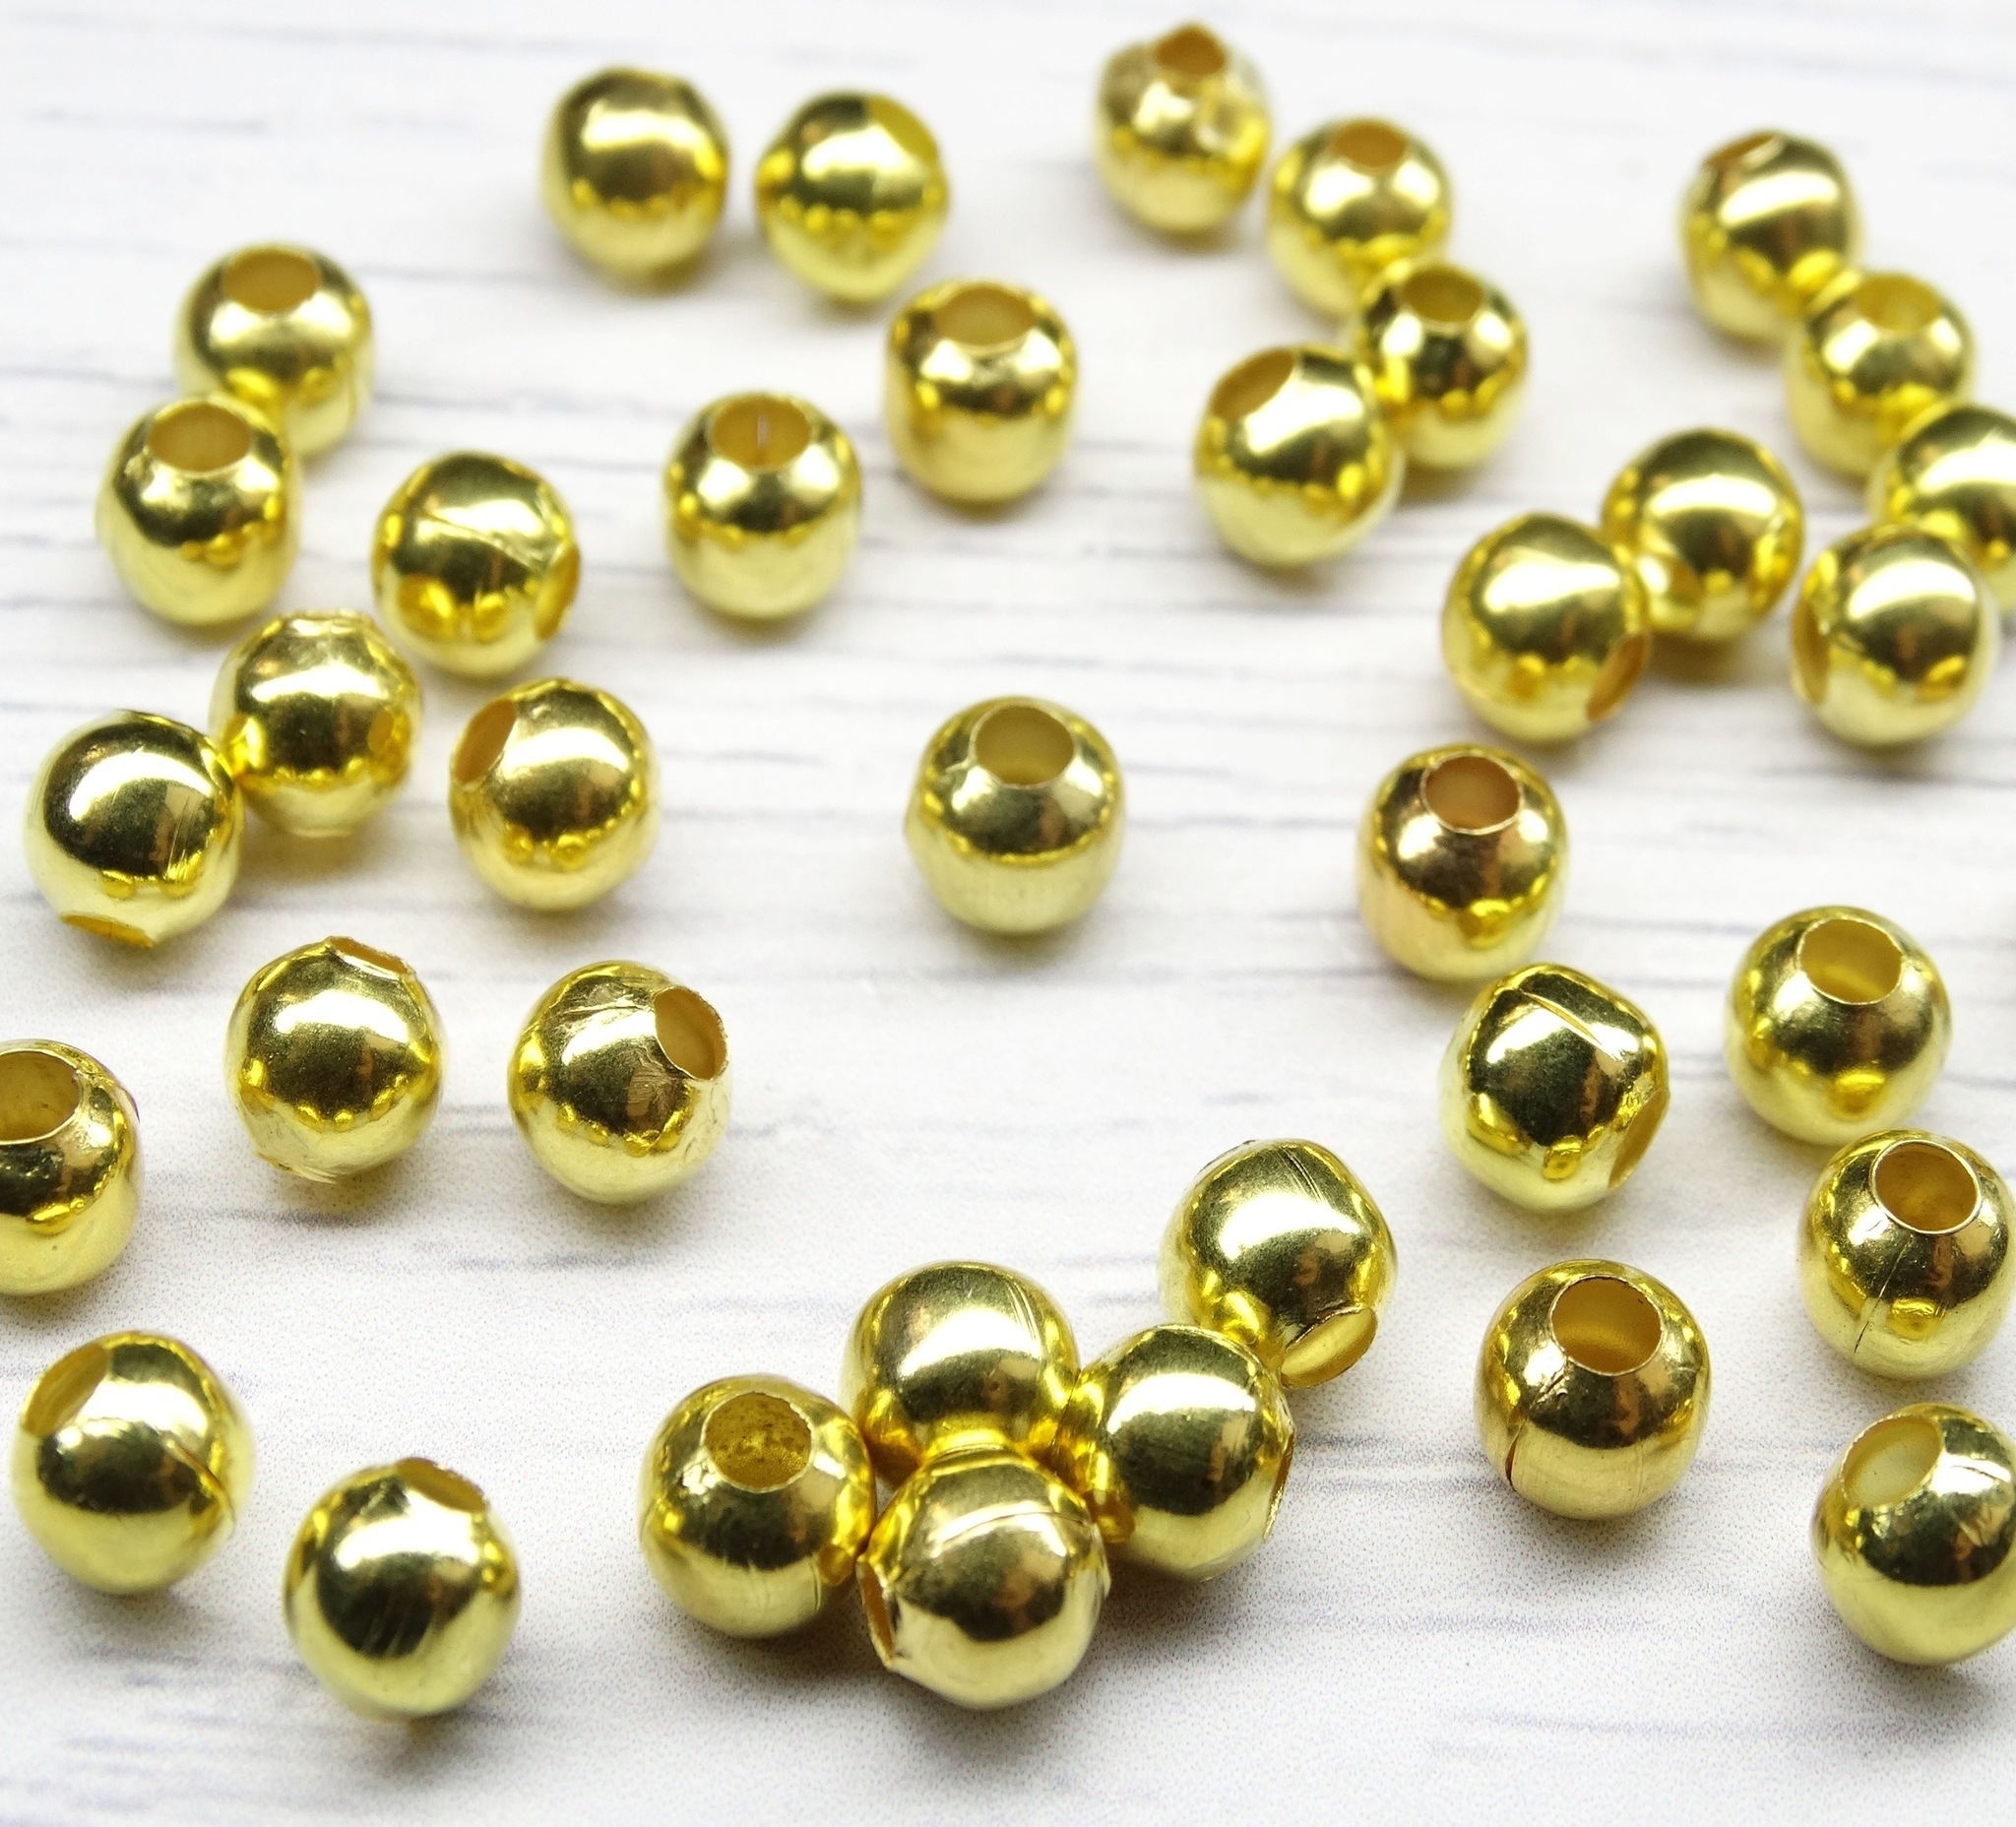 БЗ001НН6 Металлические бусины круглые, цвет: золото (позолота), размер: 6 мм, 5 гр.